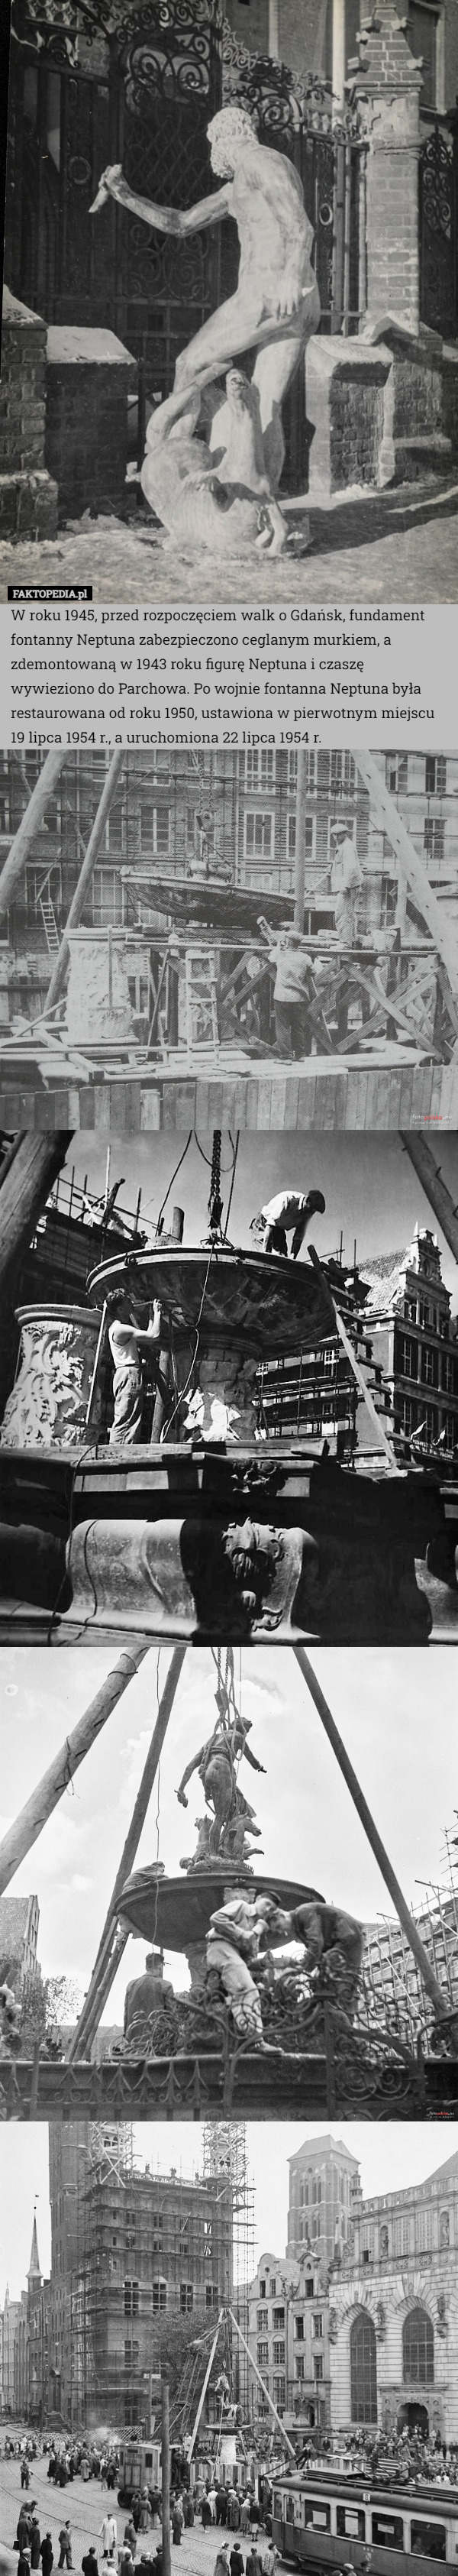 W roku 1945, przed rozpoczęciem walk o Gdańsk, fundament fontanny Neptuna zabezpieczono ceglanym murkiem, a zdemontowaną w 1943 roku figurę Neptuna i czaszę wywieziono do Parchowa. Po wojnie fontanna Neptuna była restaurowana od roku 1950, ustawiona w pierwotnym miejscu 19 lipca 1954 r., a uruchomiona 22 lipca 1954 r. 